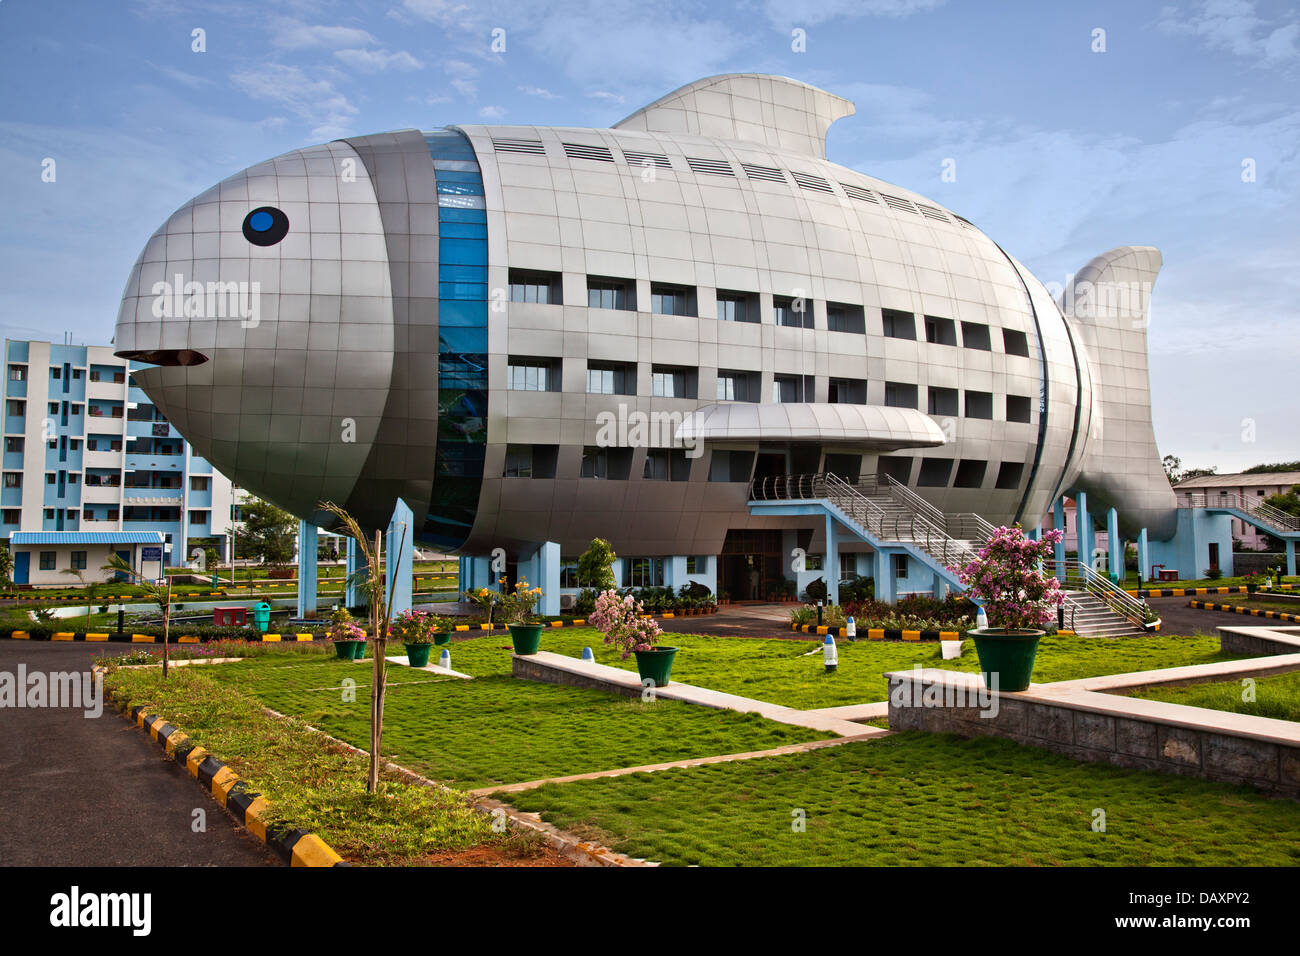 Facade of a building, Fish Building, Hyderabad, Andhra Pradesh, India Stock Photo